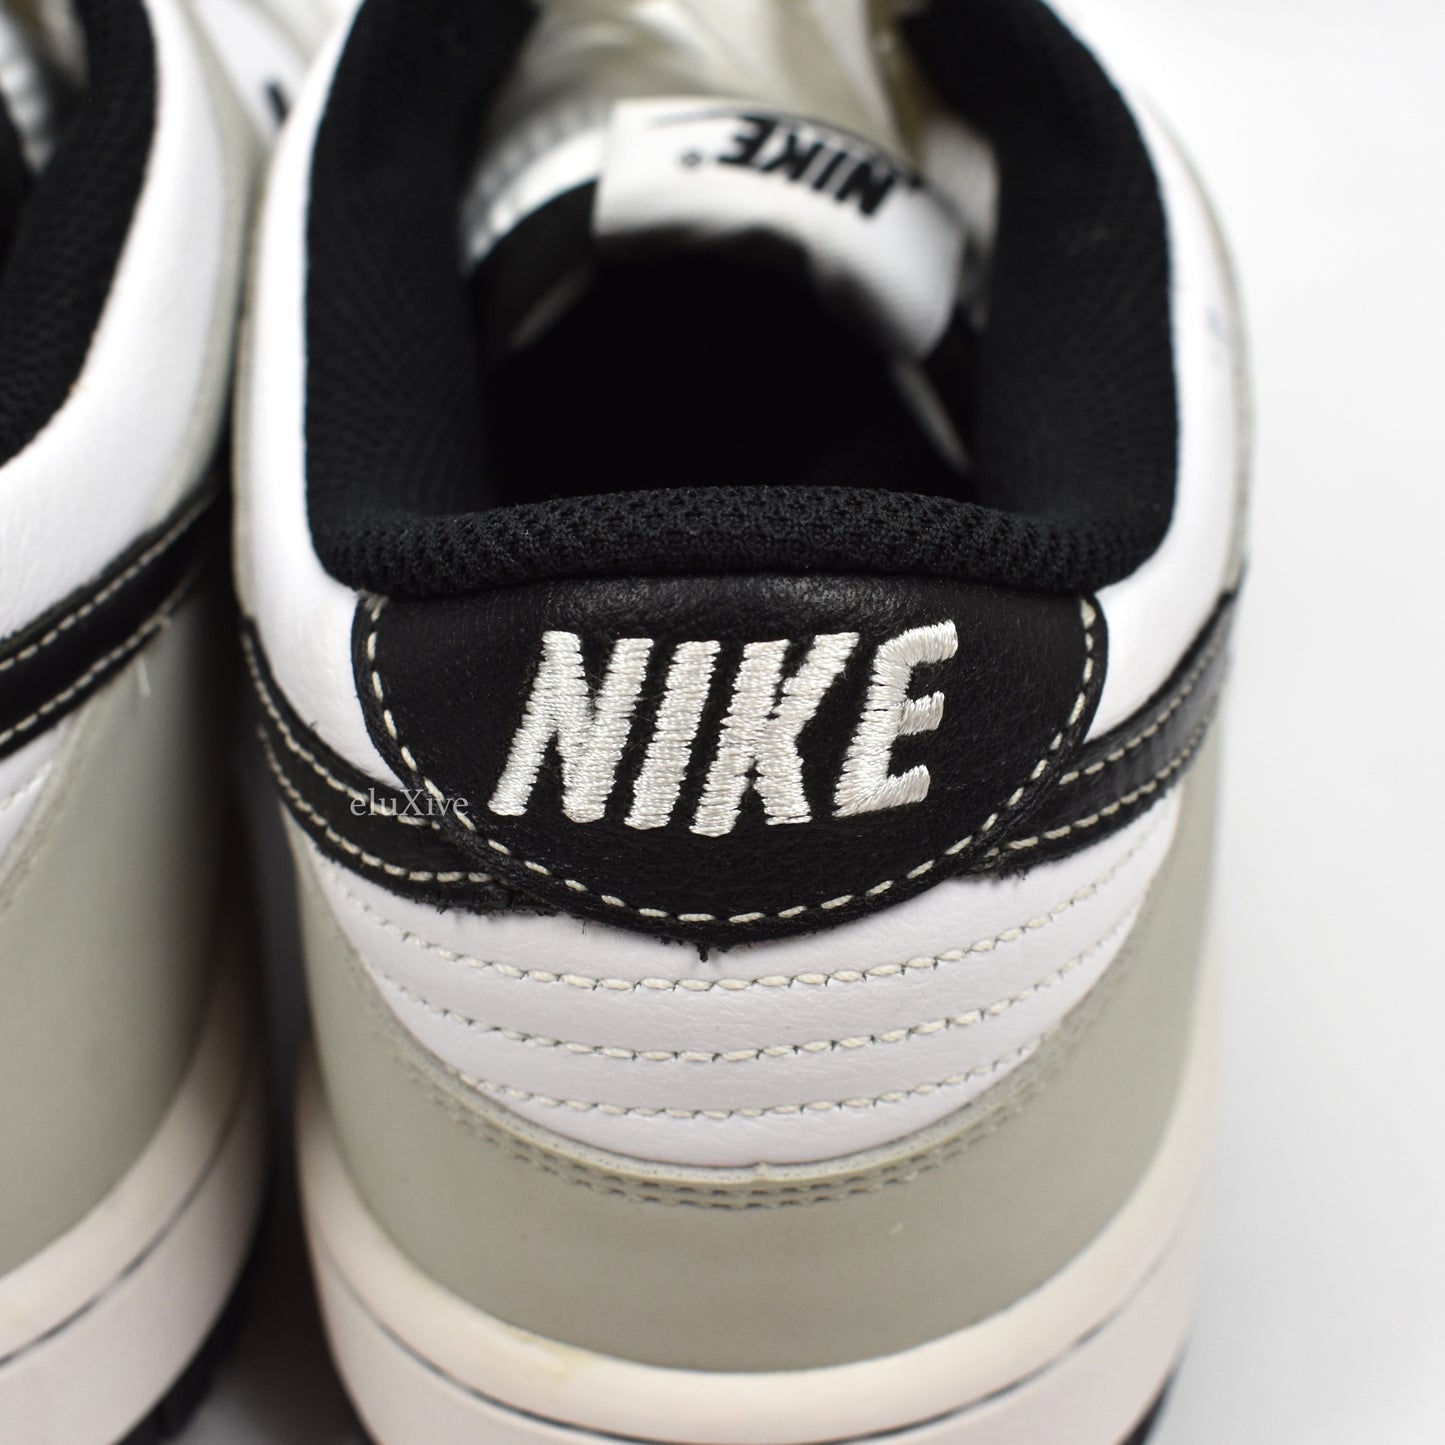 Nike - Dunk Low NG Golf (White/Gray/Black)